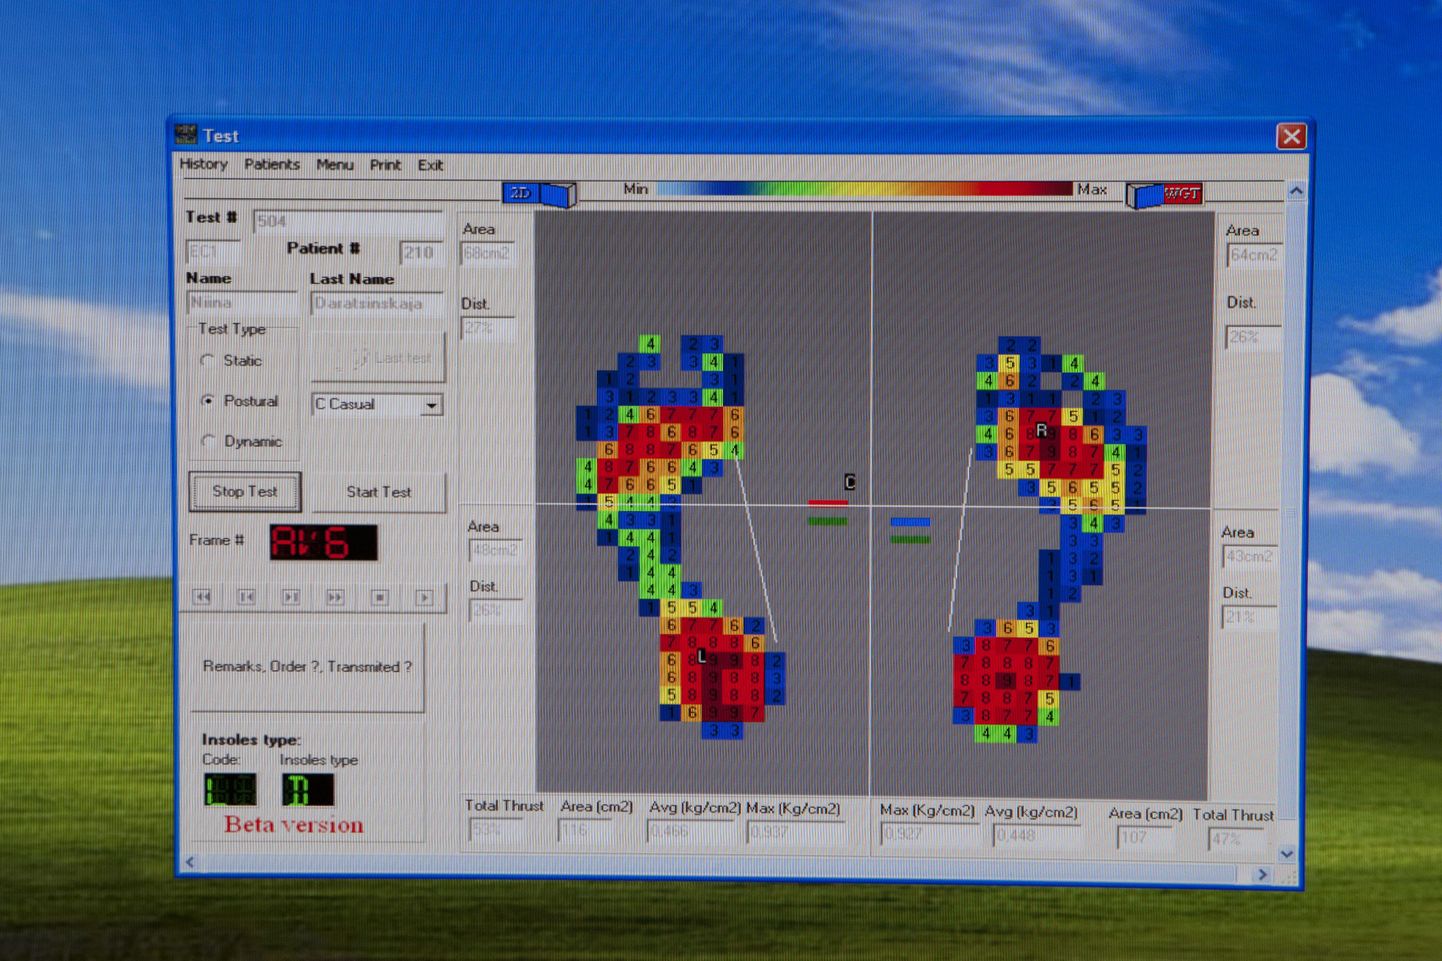 Датчики специального прибора - подометра передают на комьютер информацию о распределении давления на обеих стопах. На экране она преобразуется в картинку из разноцветных кубиков.